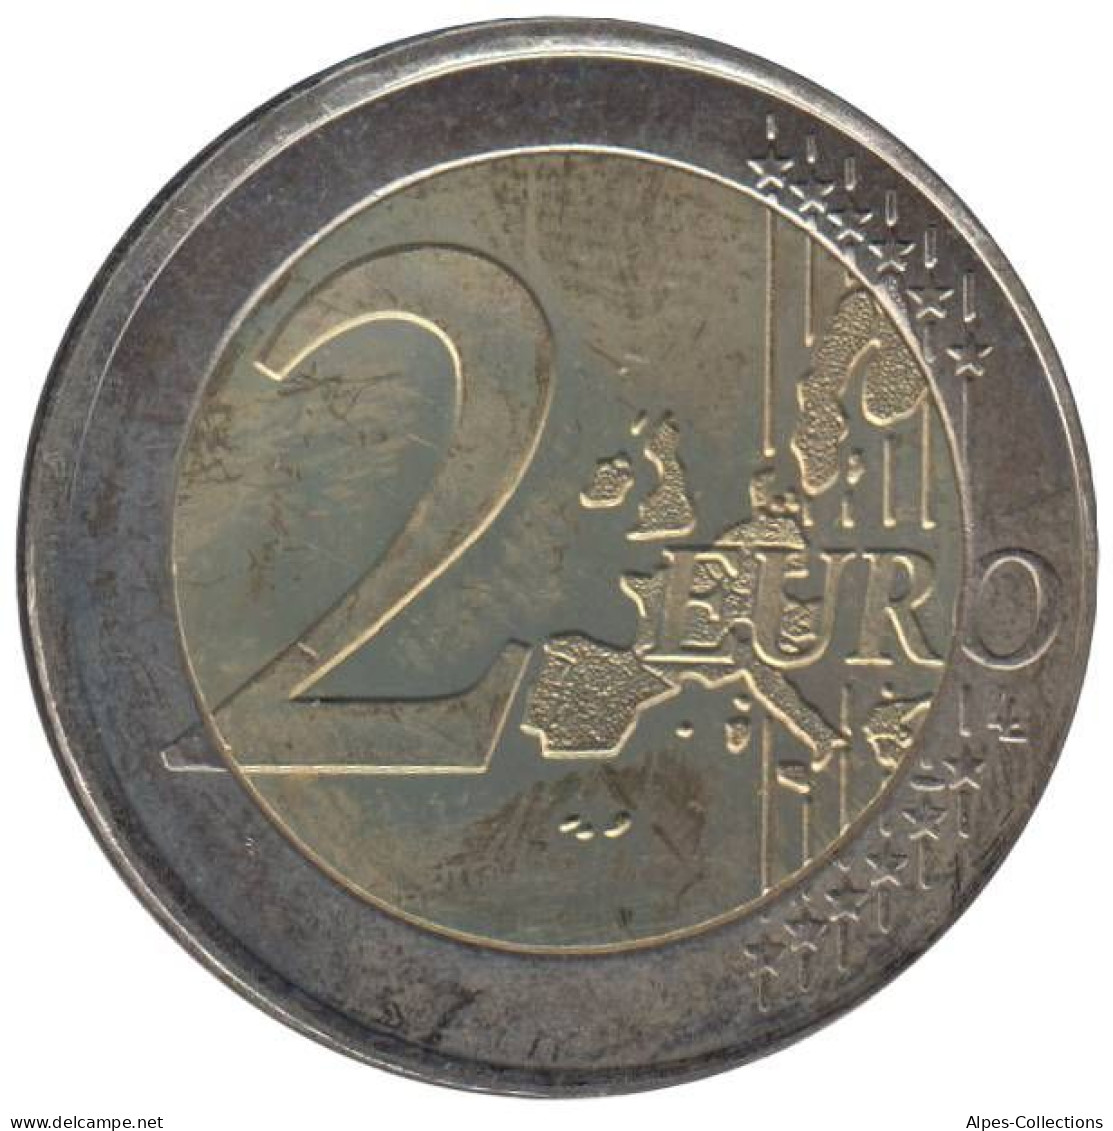 GR20002.2 - GRECE - 2 Euros - 2002 S - Atelier Finlande - Griechenland